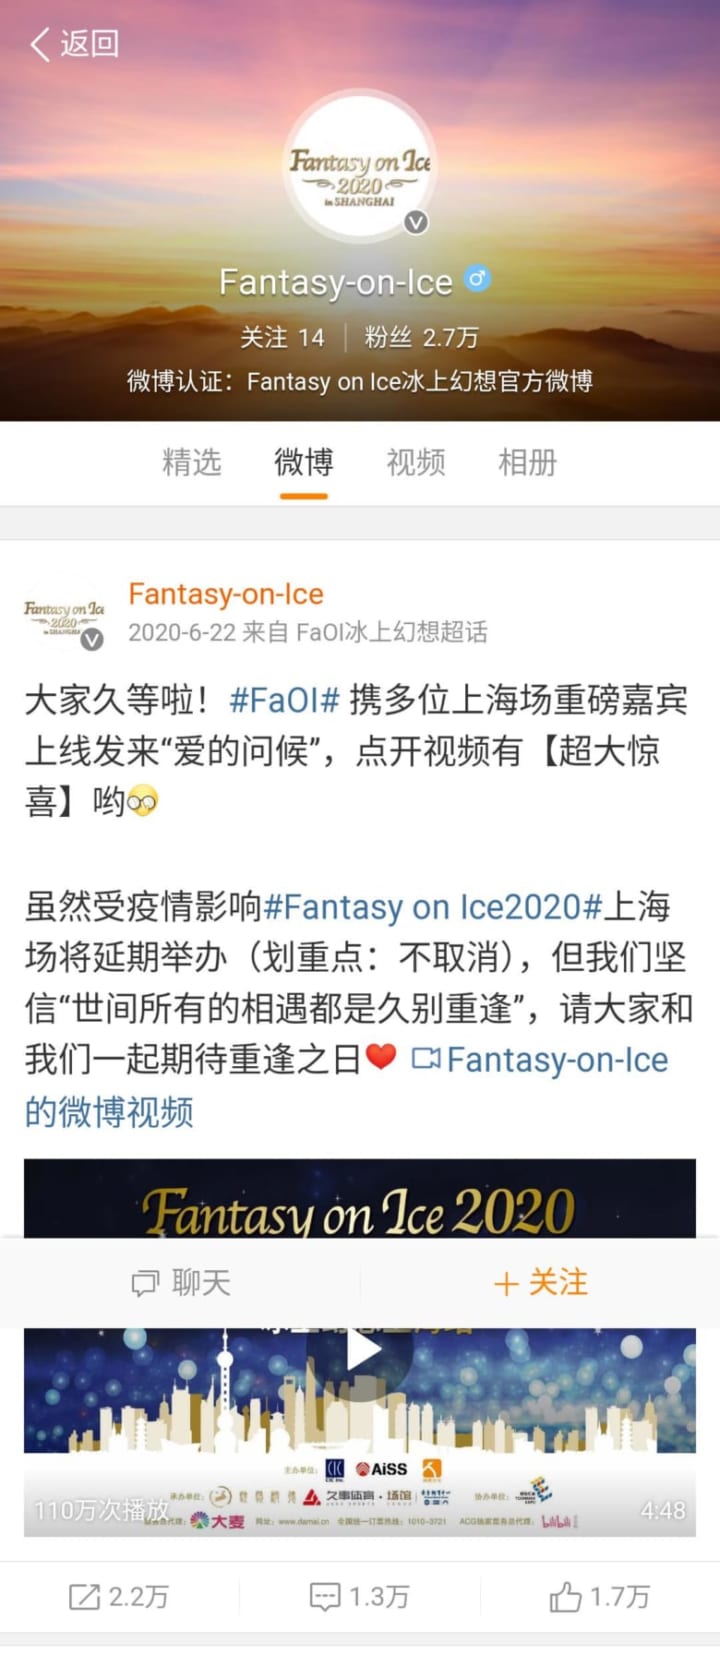 いつか成功させて欲しいFaoi上海「FaOI上海の公演はスポンサーに中国大手動画サイトのビリビリが入ってた」「もうFAOIとしては公演出来ないのか？」